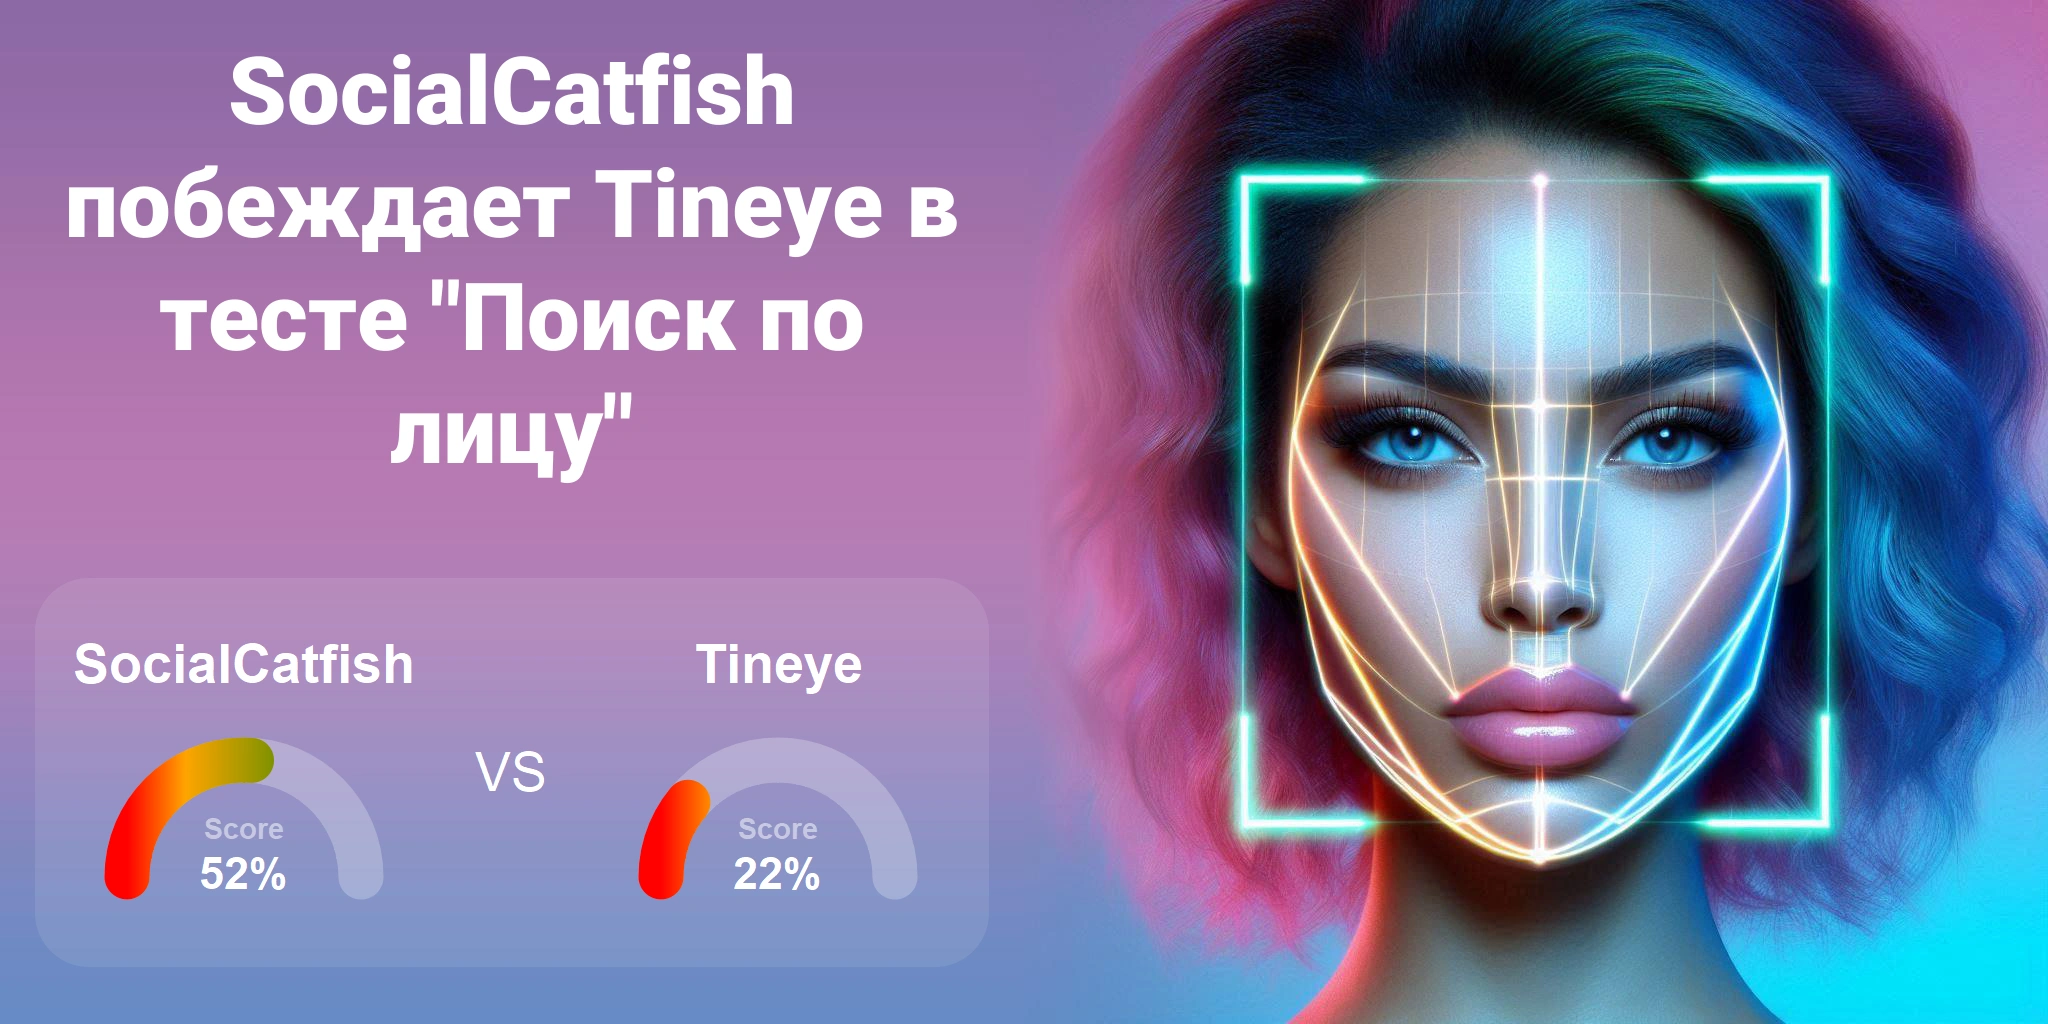 Что лучше для поиска по лицам: <br>Tineye или SocialCatfish?